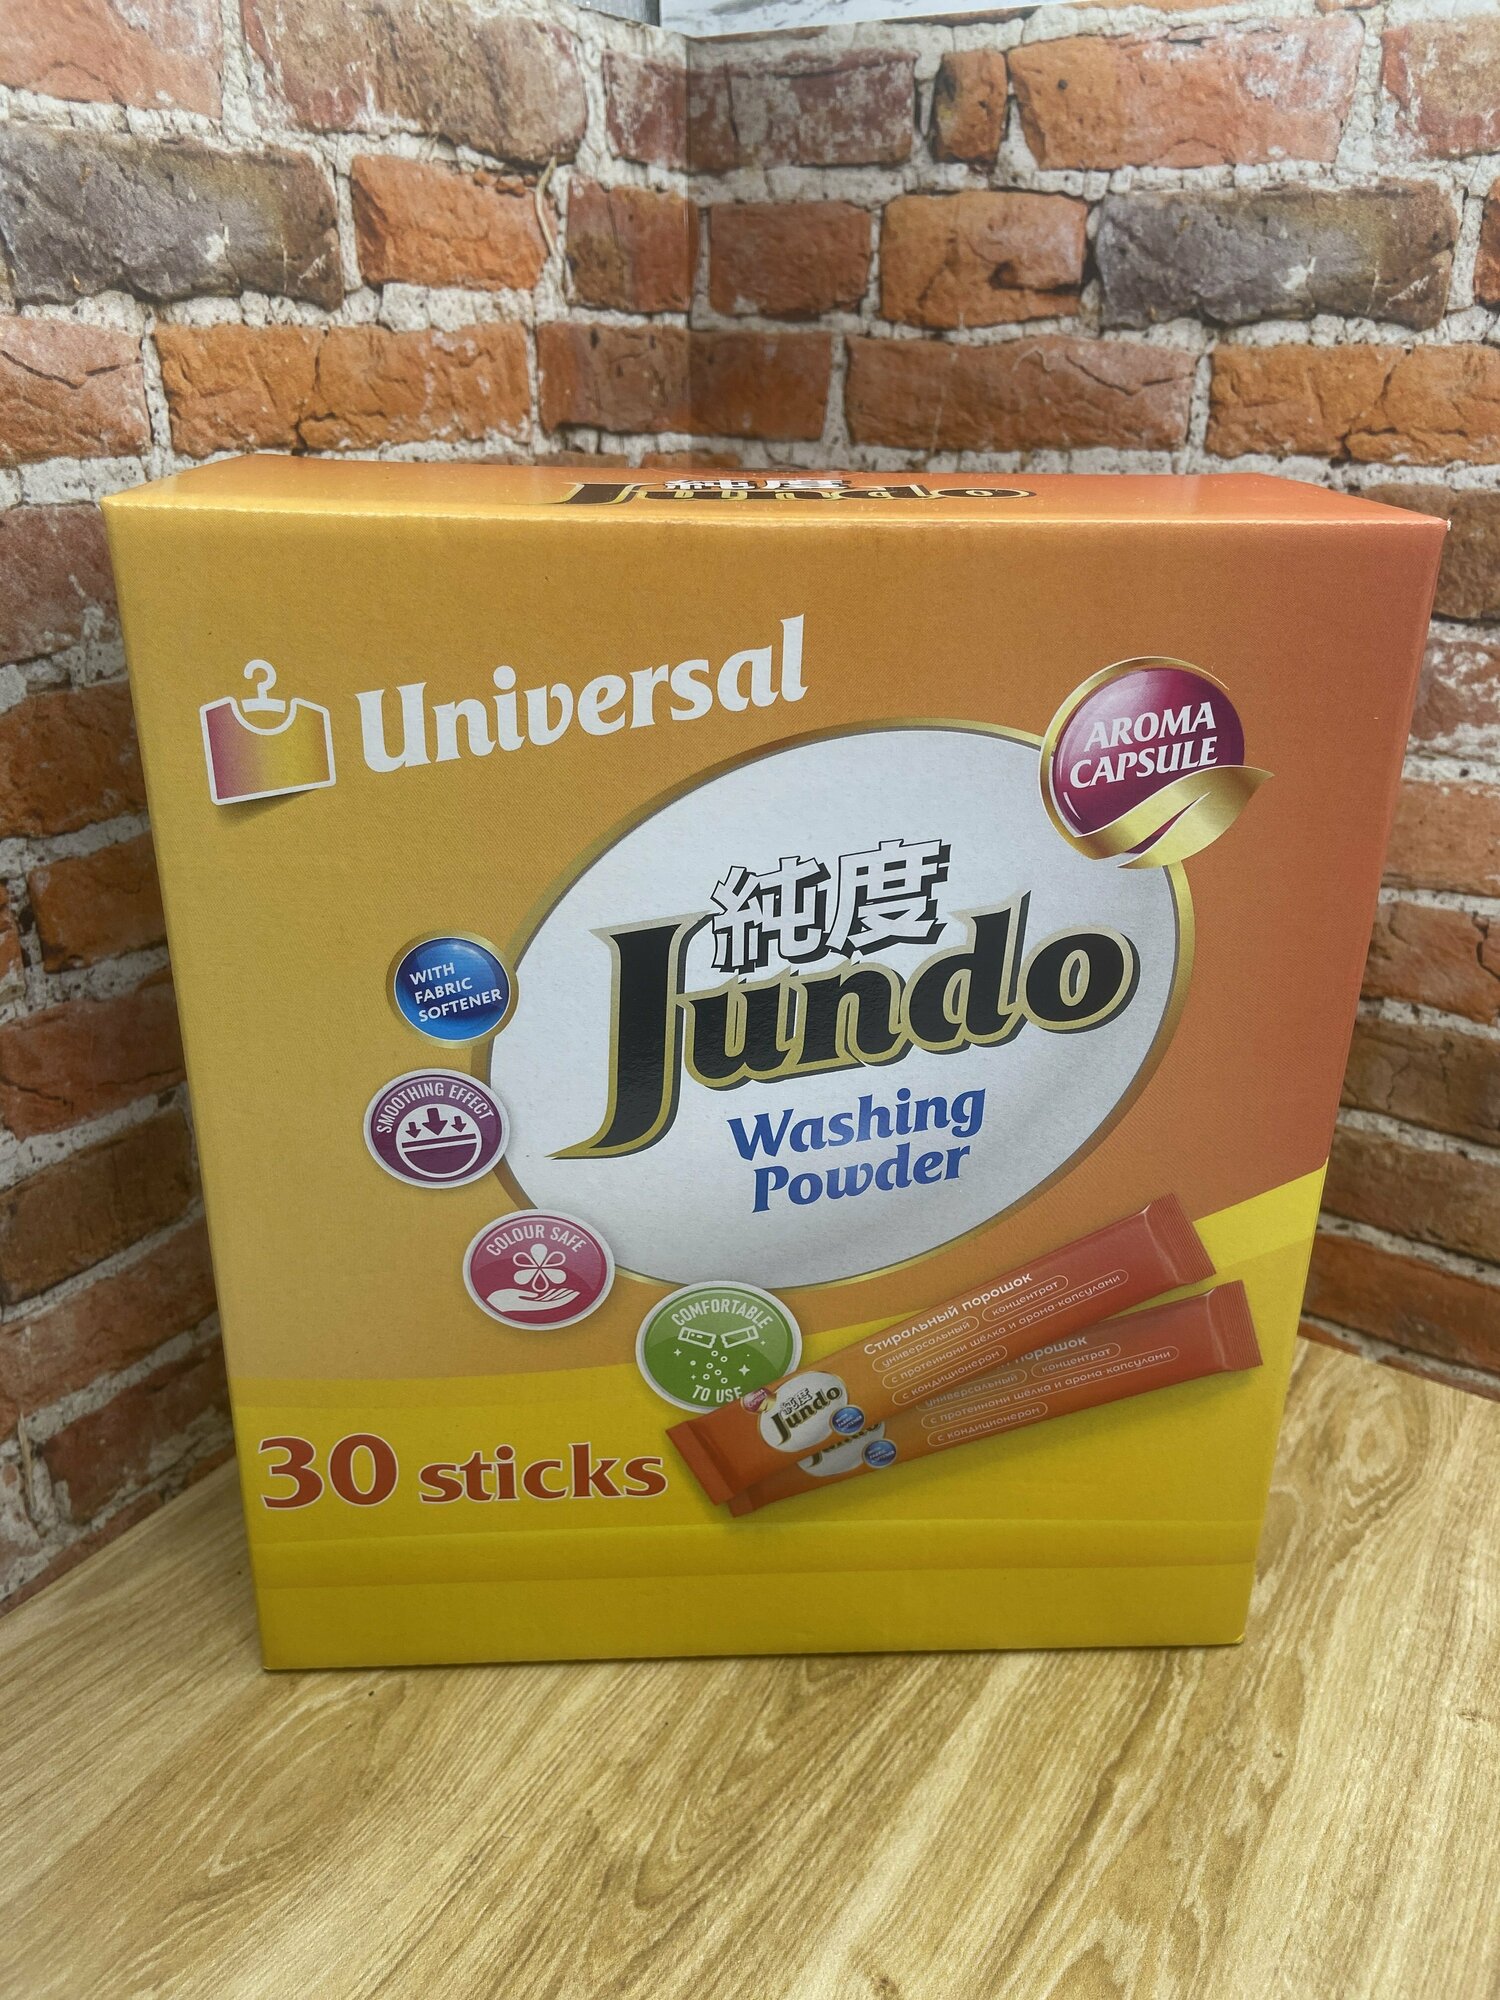 Jundo Aroma Capsules Stick Cтиральный порошок в стиках с протеинами шелка универсальный с кондиционером 2 в 1 30 шт 750 гр